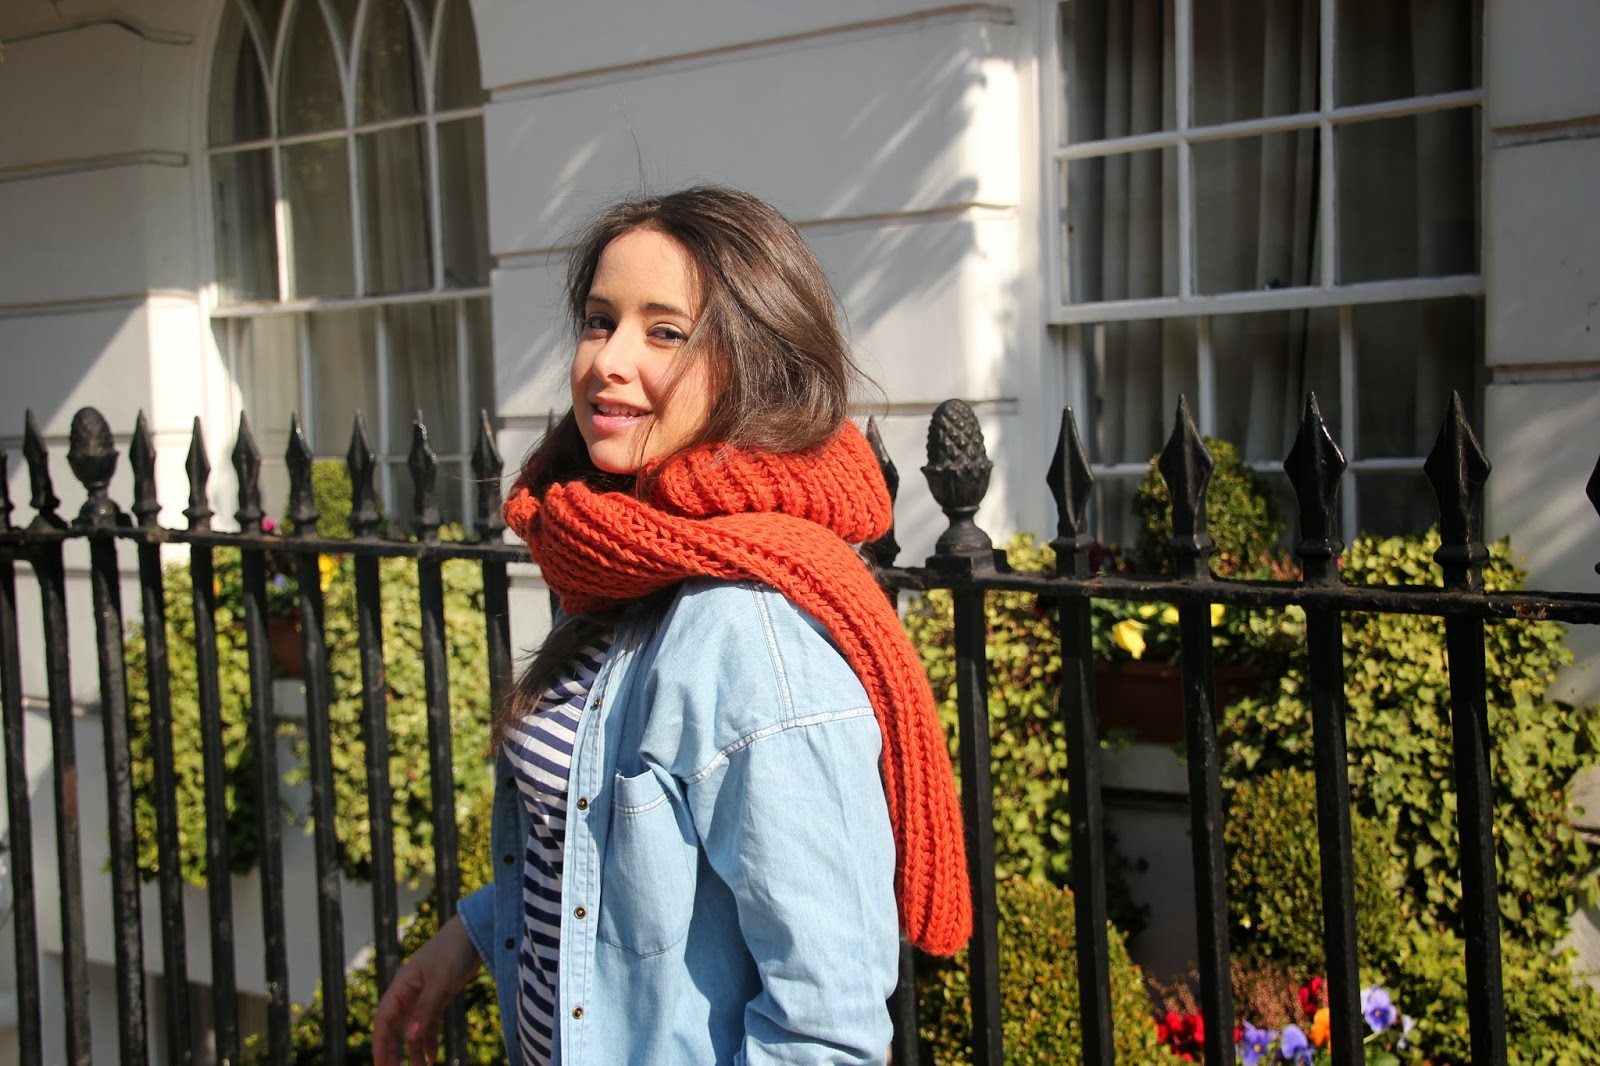 DIY Cómo hacer una bufanda con capucha. Blog de costura y diy.